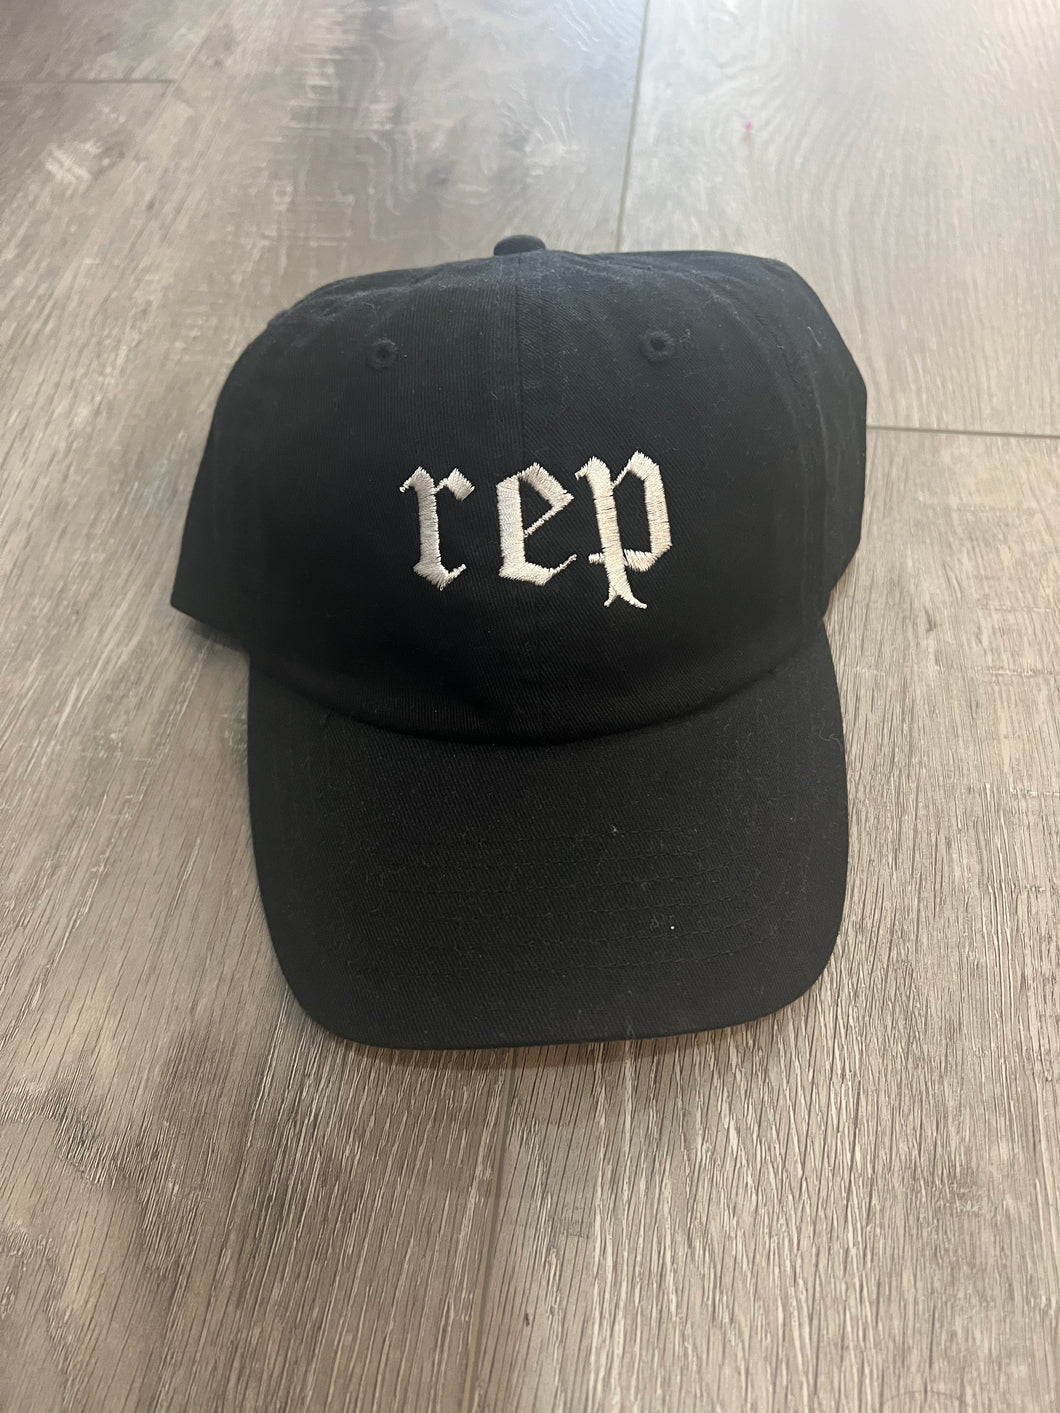 Rep Hat